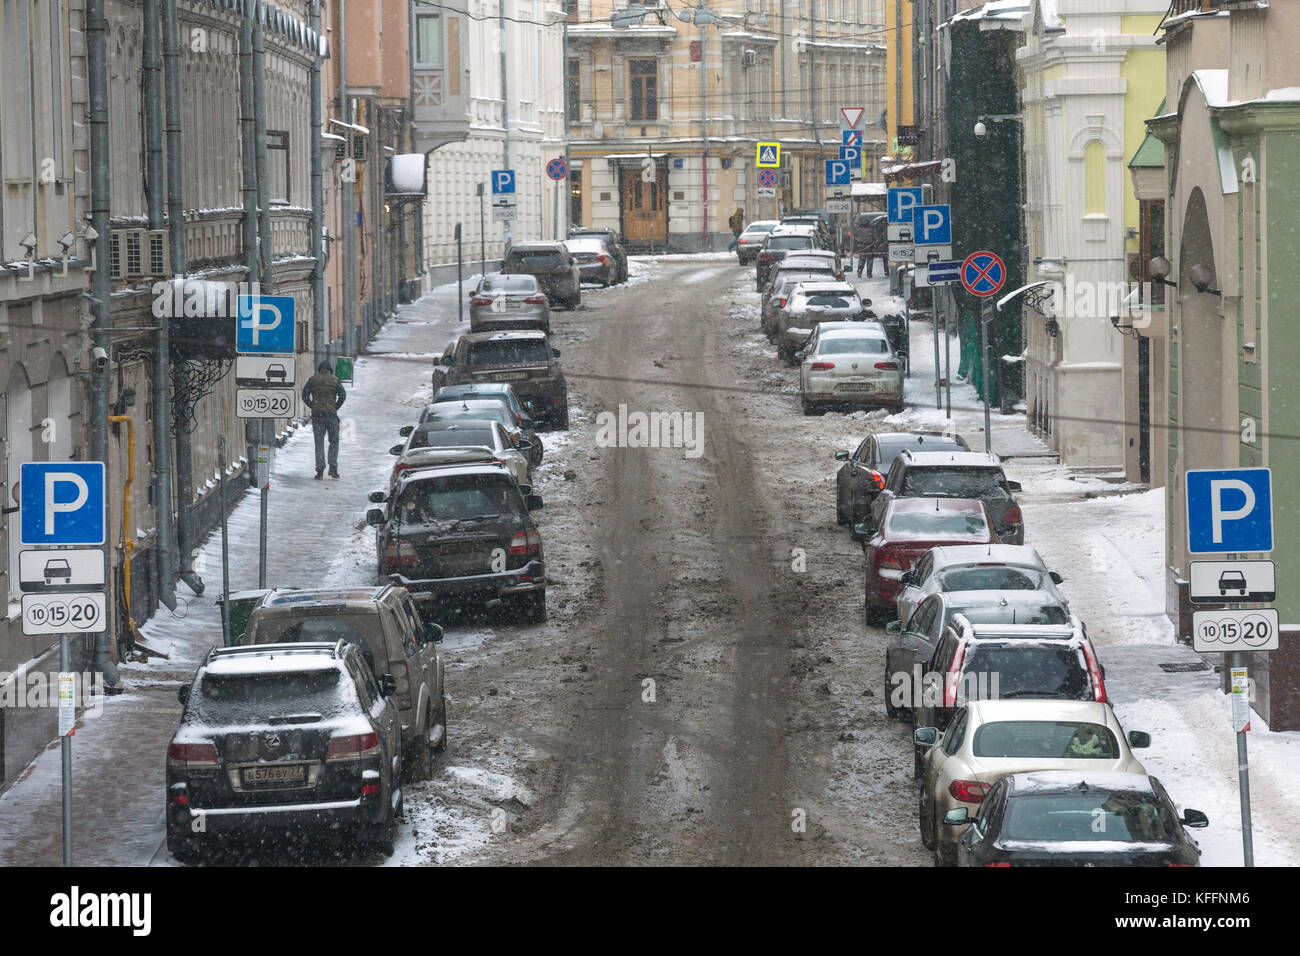 Vue de la rue du centre de Moscou avec des signes d'un stationnement payant durant une chute de neige, la russie Banque D'Images